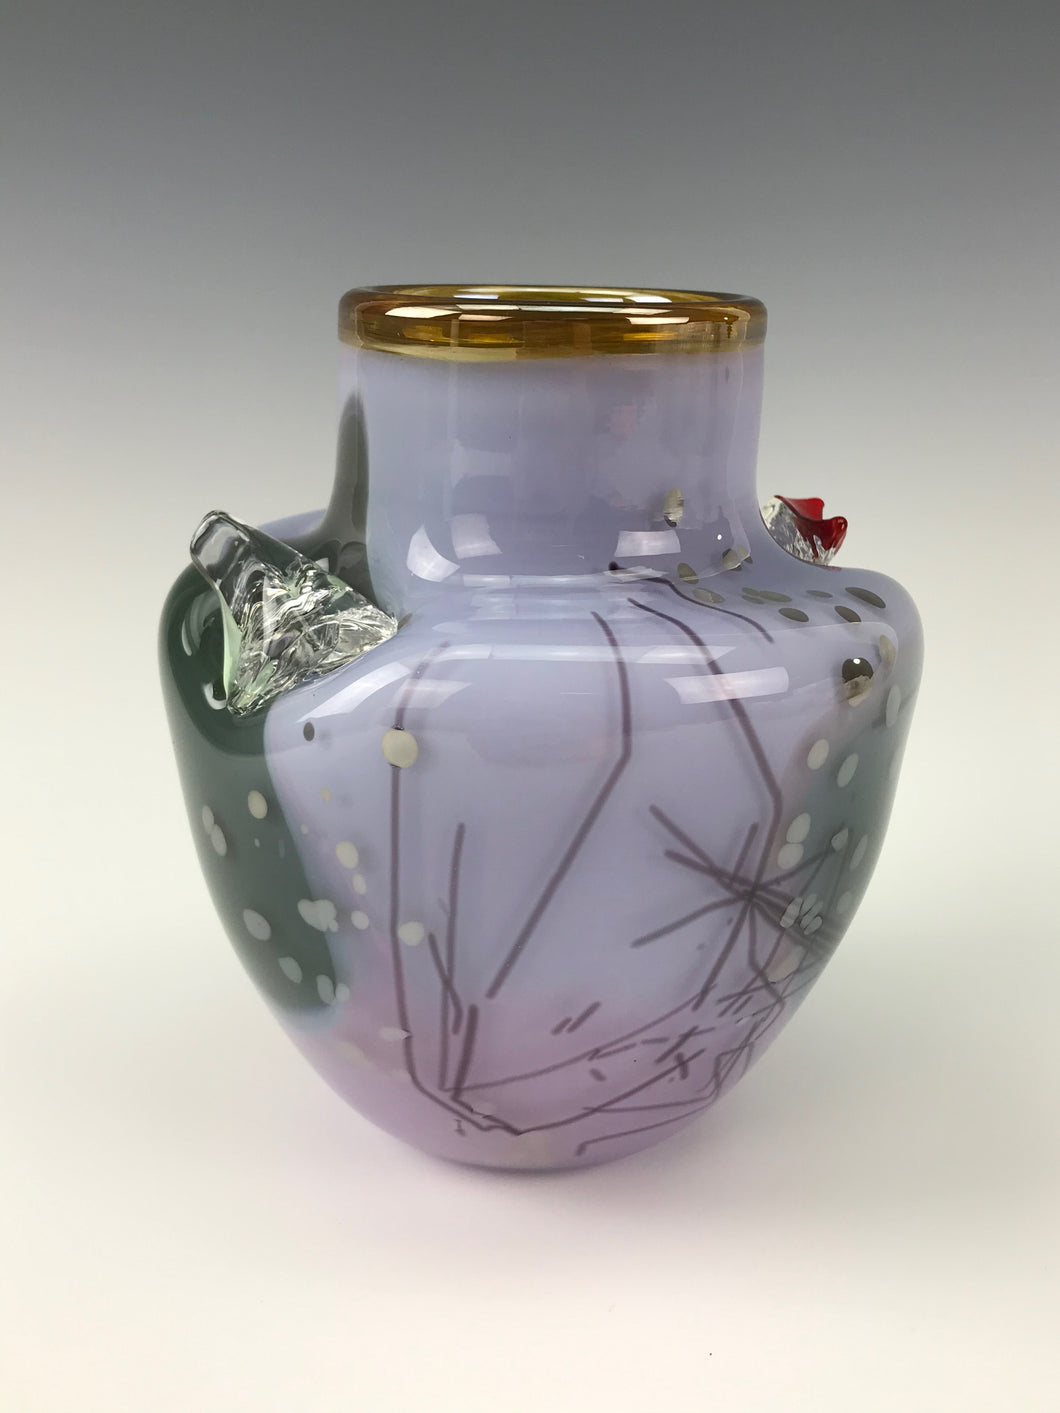 Inclusion Vase - Purple Rose